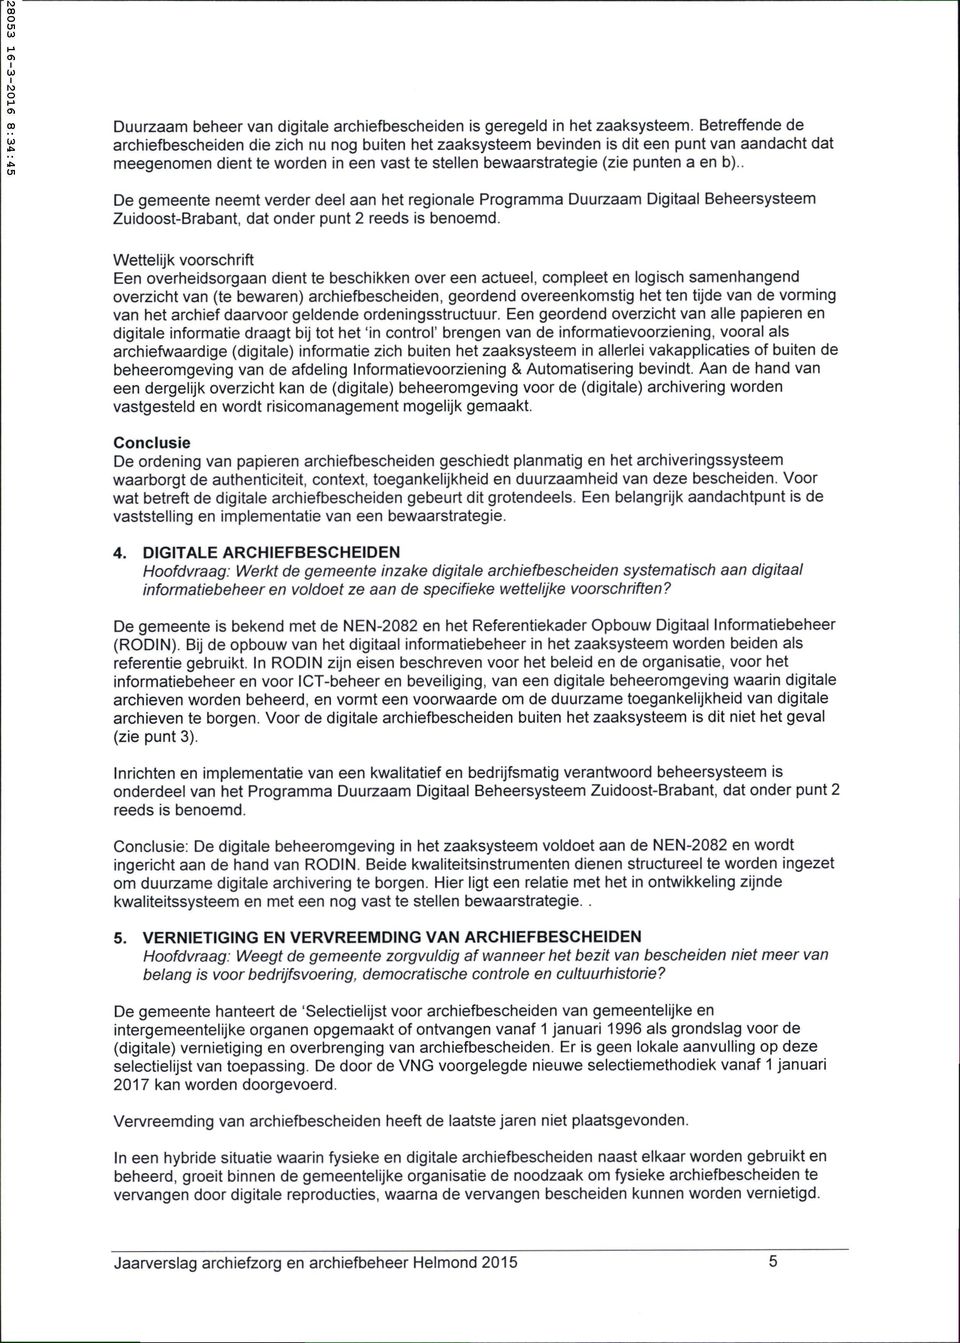 . De gemeente neemt verder deel aan het regionale Programma Duurzaam Digitaal Beheersysteem Zuidoost-Brabant, dat onder punt 2 reeds is benoemd.